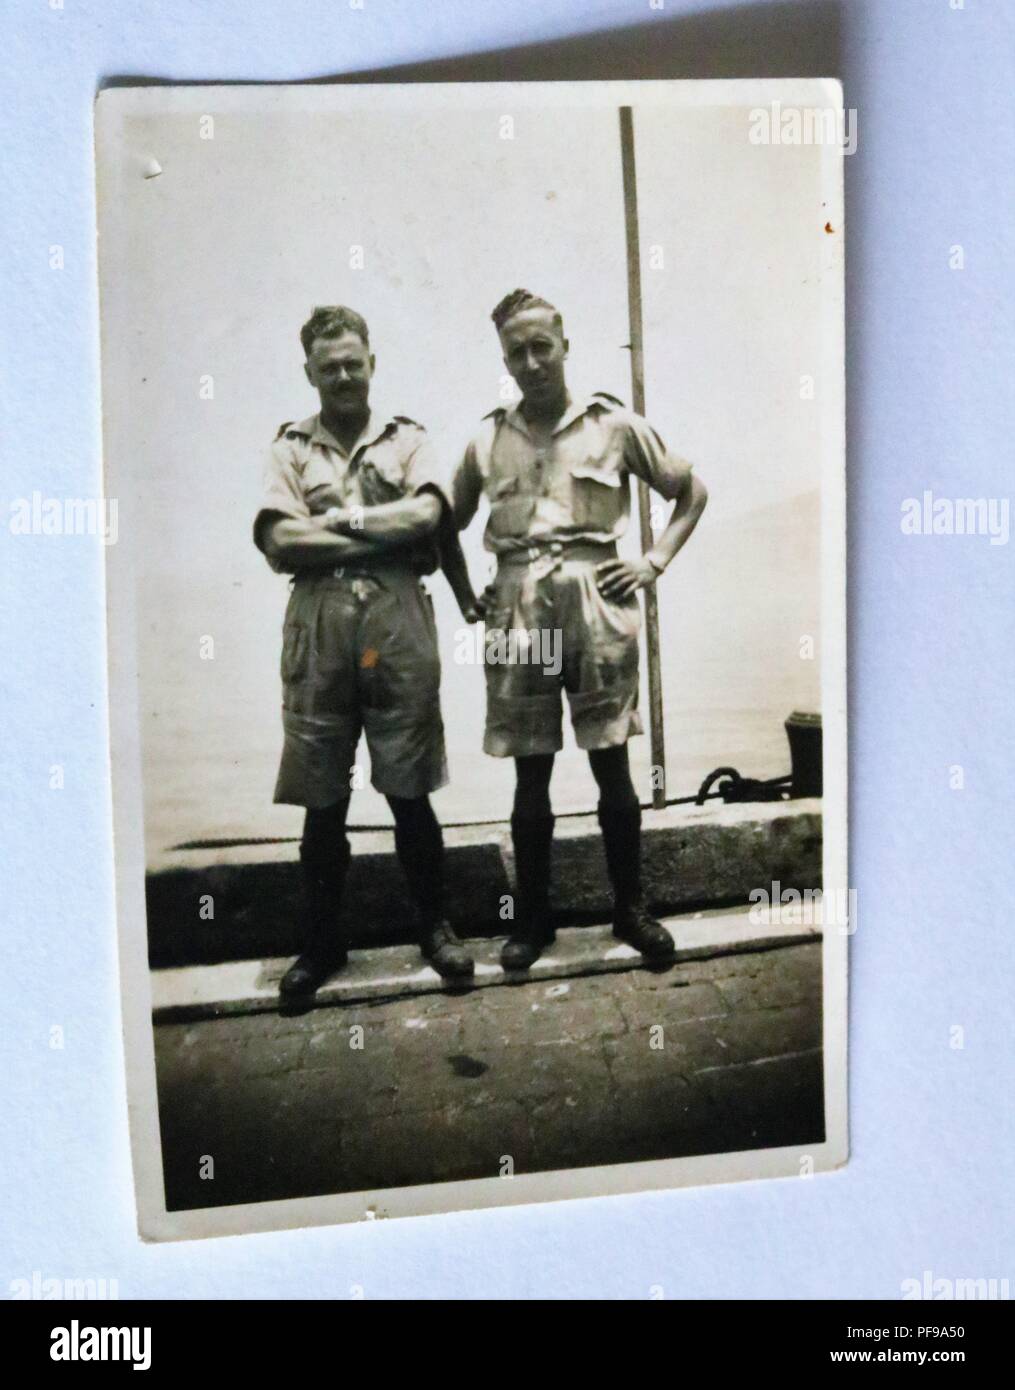 L'histoire sociale - Noir et blanc photographie ancienne montrant deux hommes portant des shorts 1930 / 1940 Banque D'Images